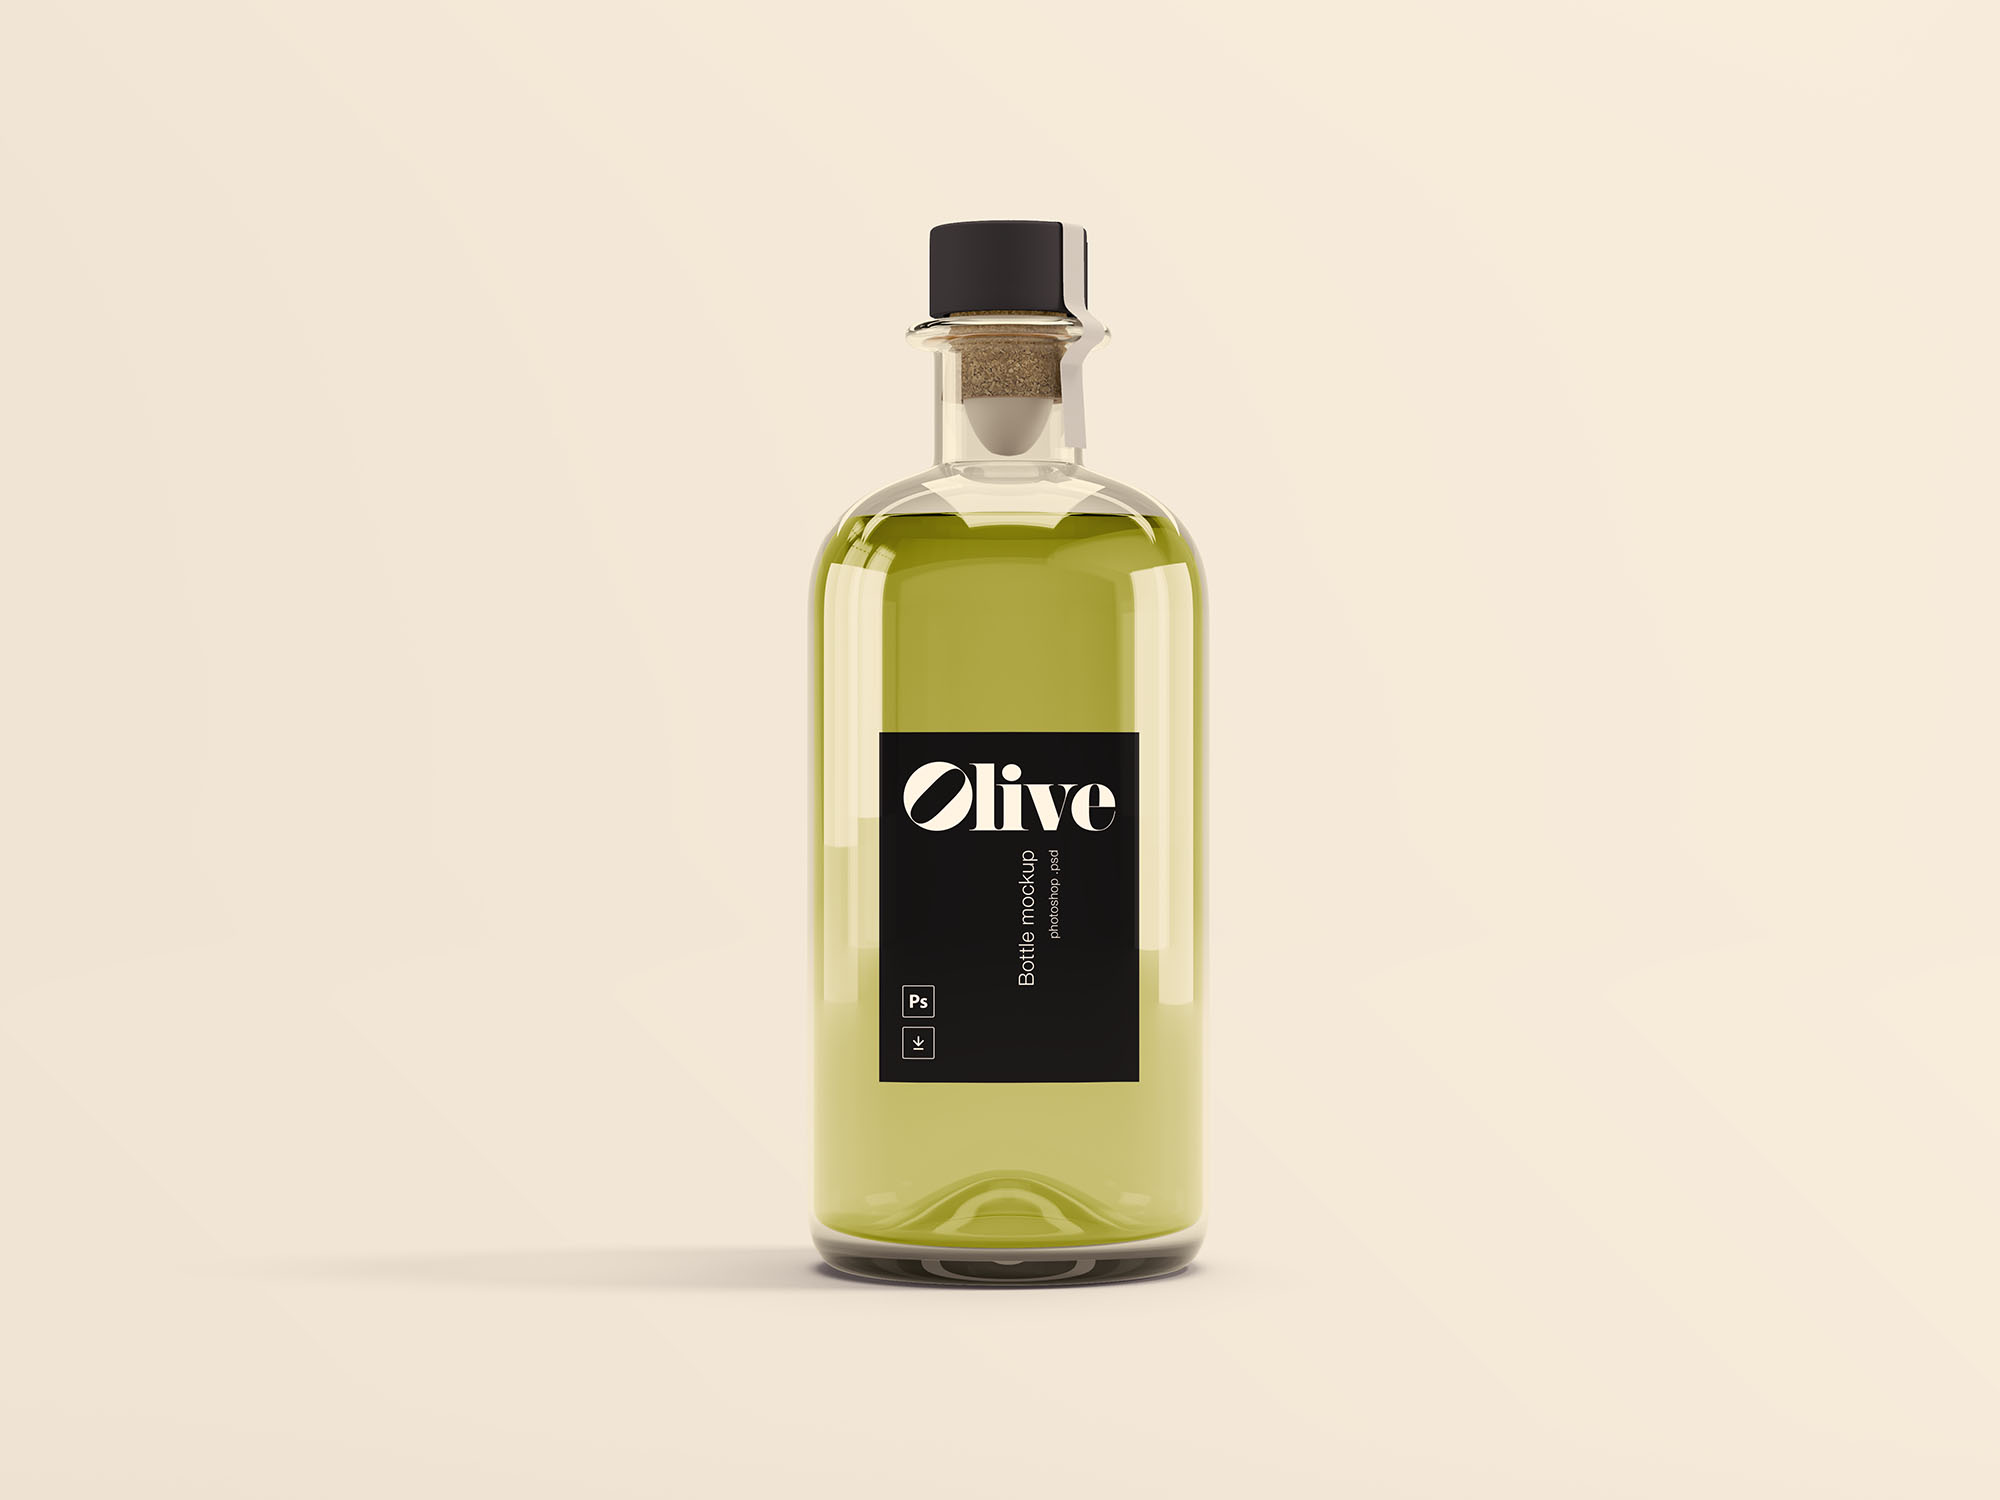 橄榄油瓶玻璃瓶设计效果图样机模板 Olive Oil Bottle Mockup插图(2)